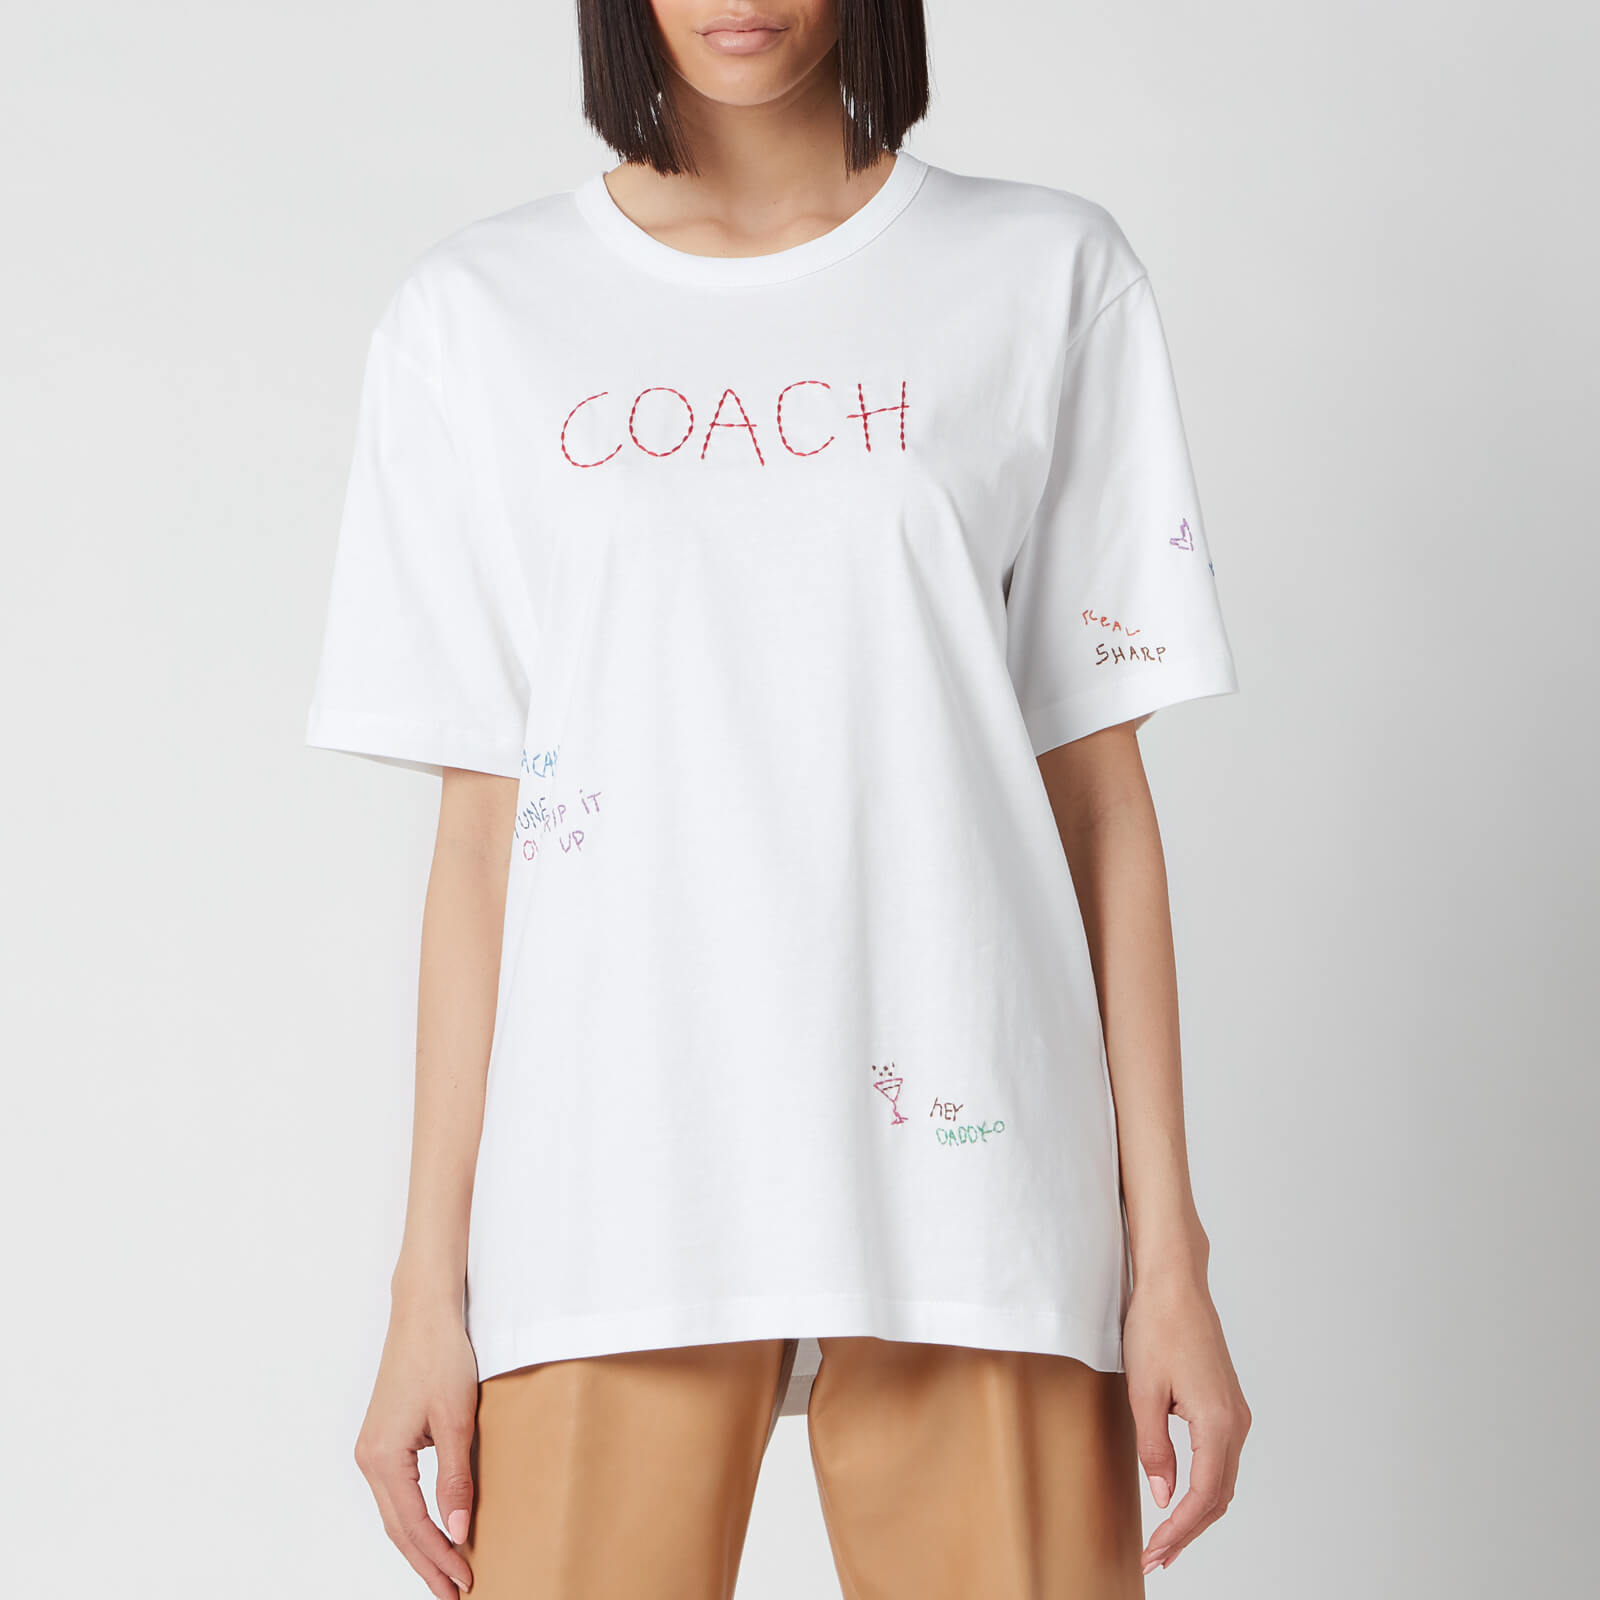 Coach Women's Hand Drawn Coach T-Shirt - Optic White - XS